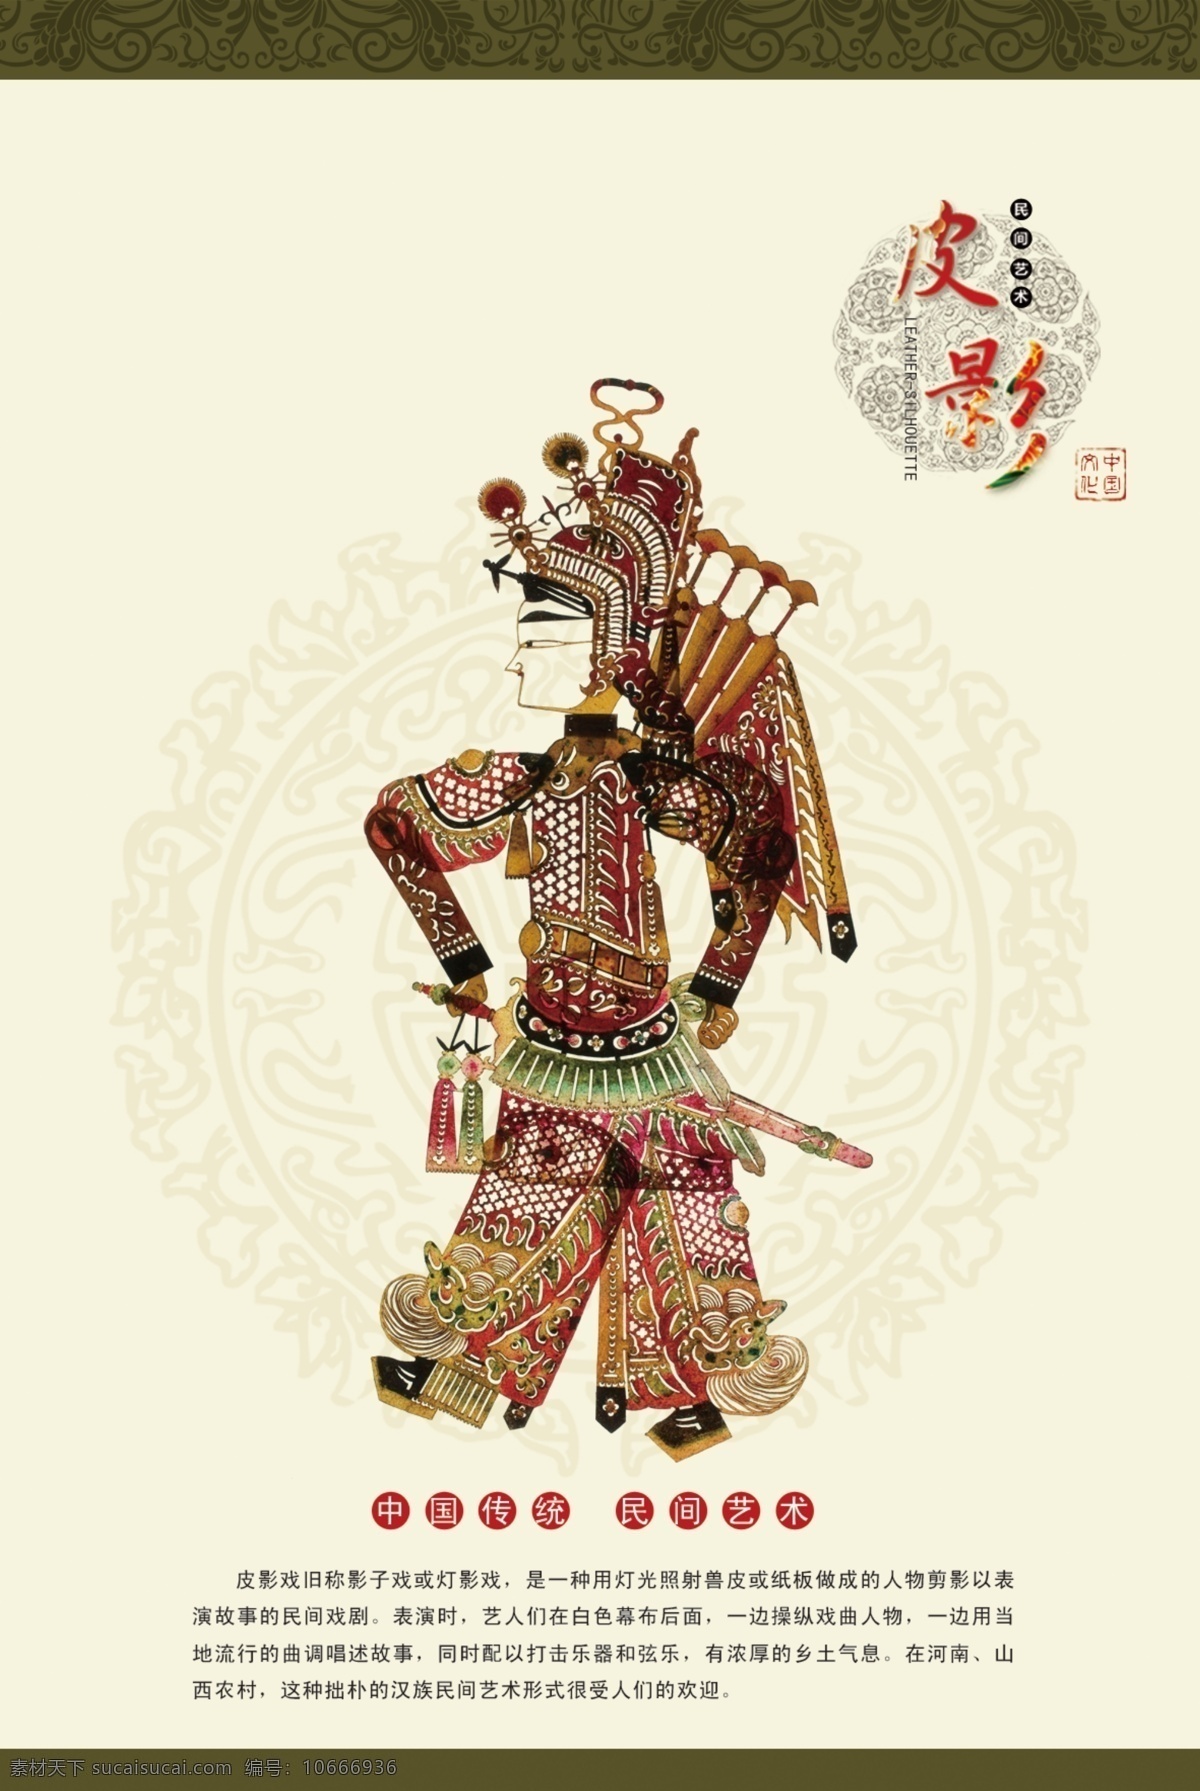 皮影 模版下载 皮影海报 民间艺术 中国传统文化 灯影戏